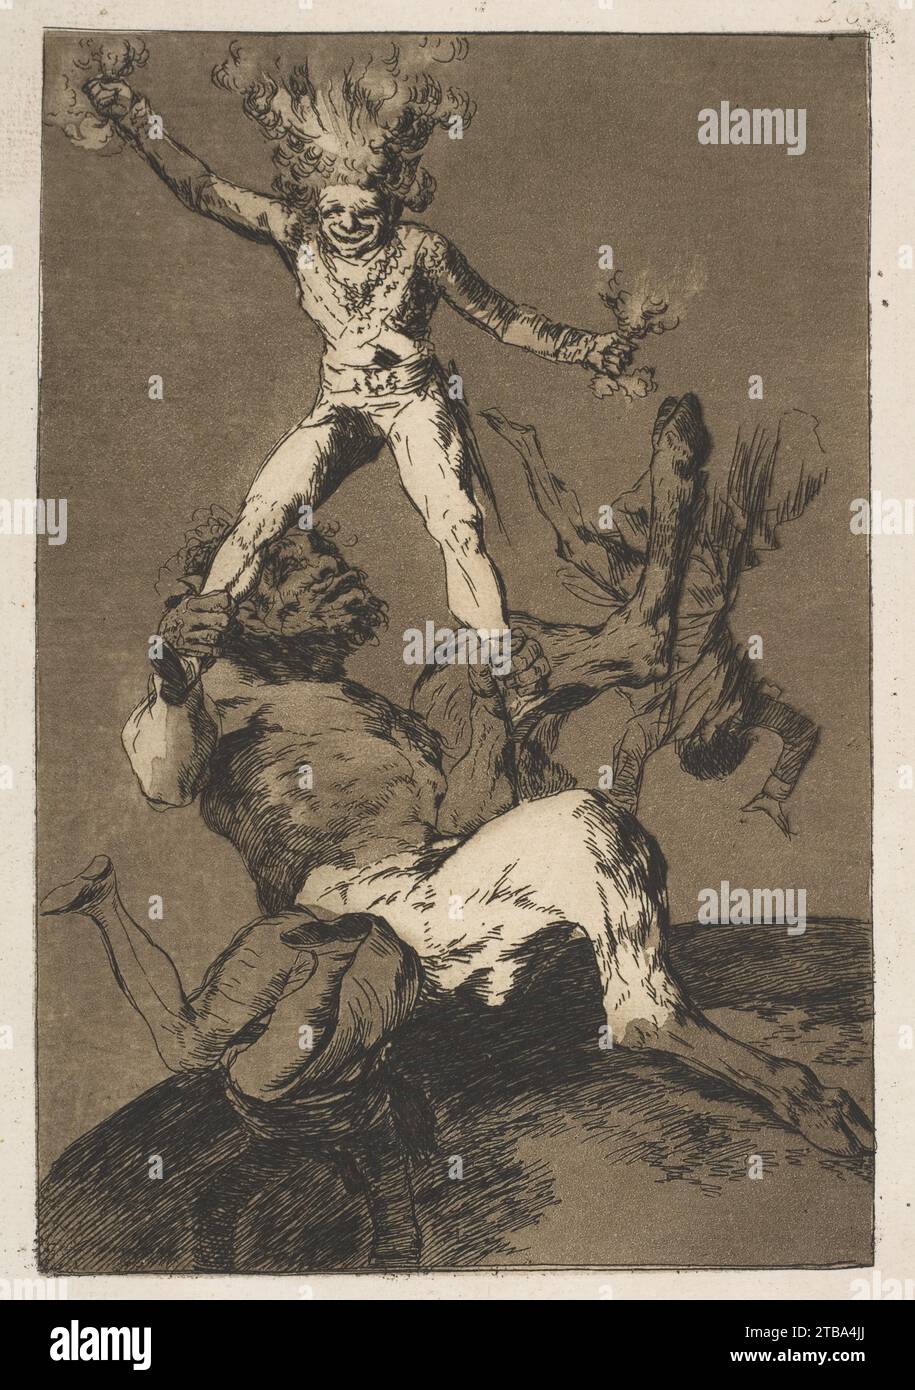 Placa 56 de 'Los Caprichos': Subir y bajar (Subir y bajar) 1958 de Goya (Francisco de Goya y Lucientes) Foto de stock